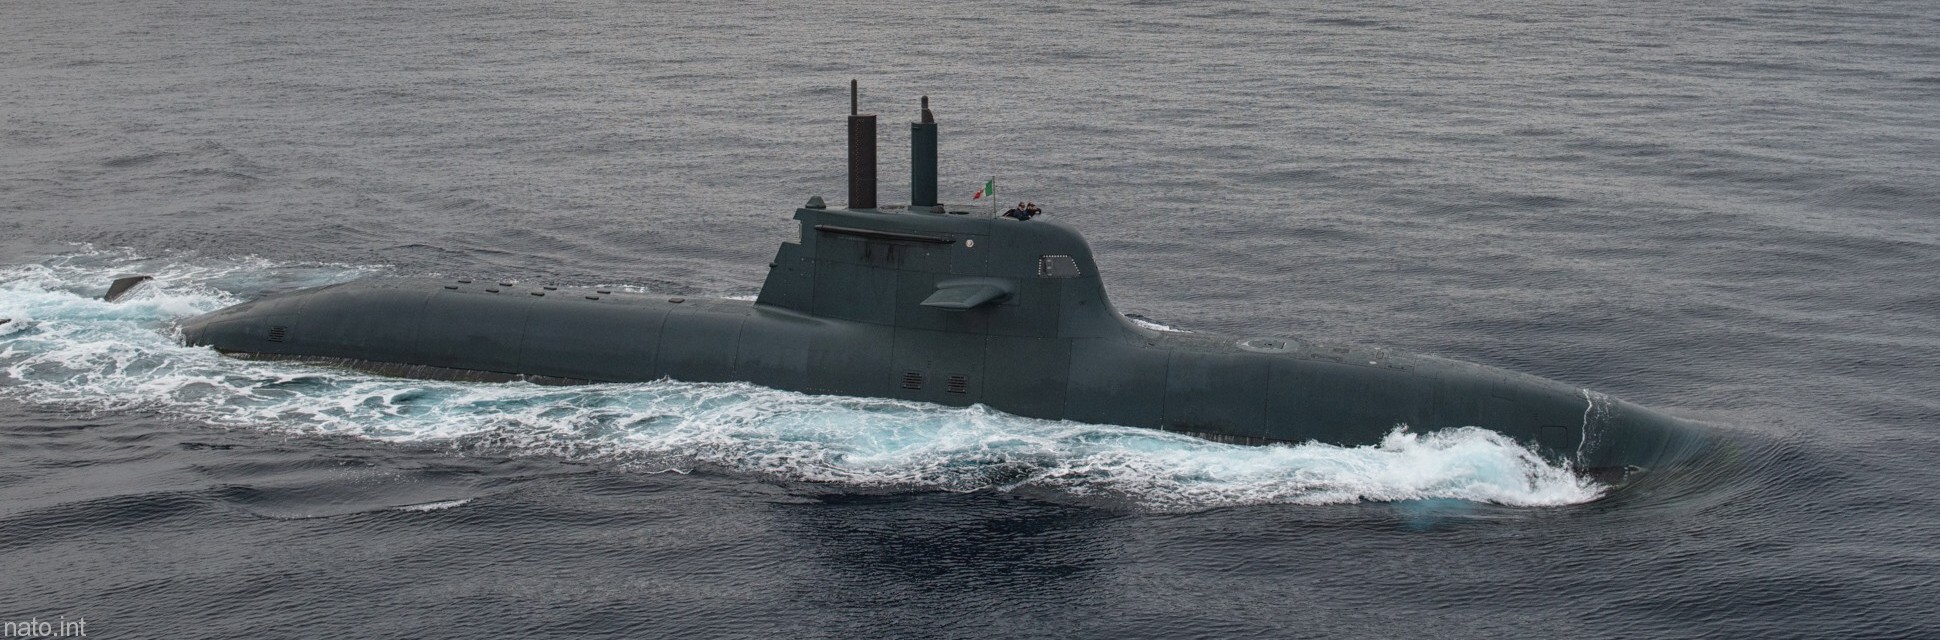 s-526 salvatore todaro its smg type 212 class submarine italian navy marina militare 14